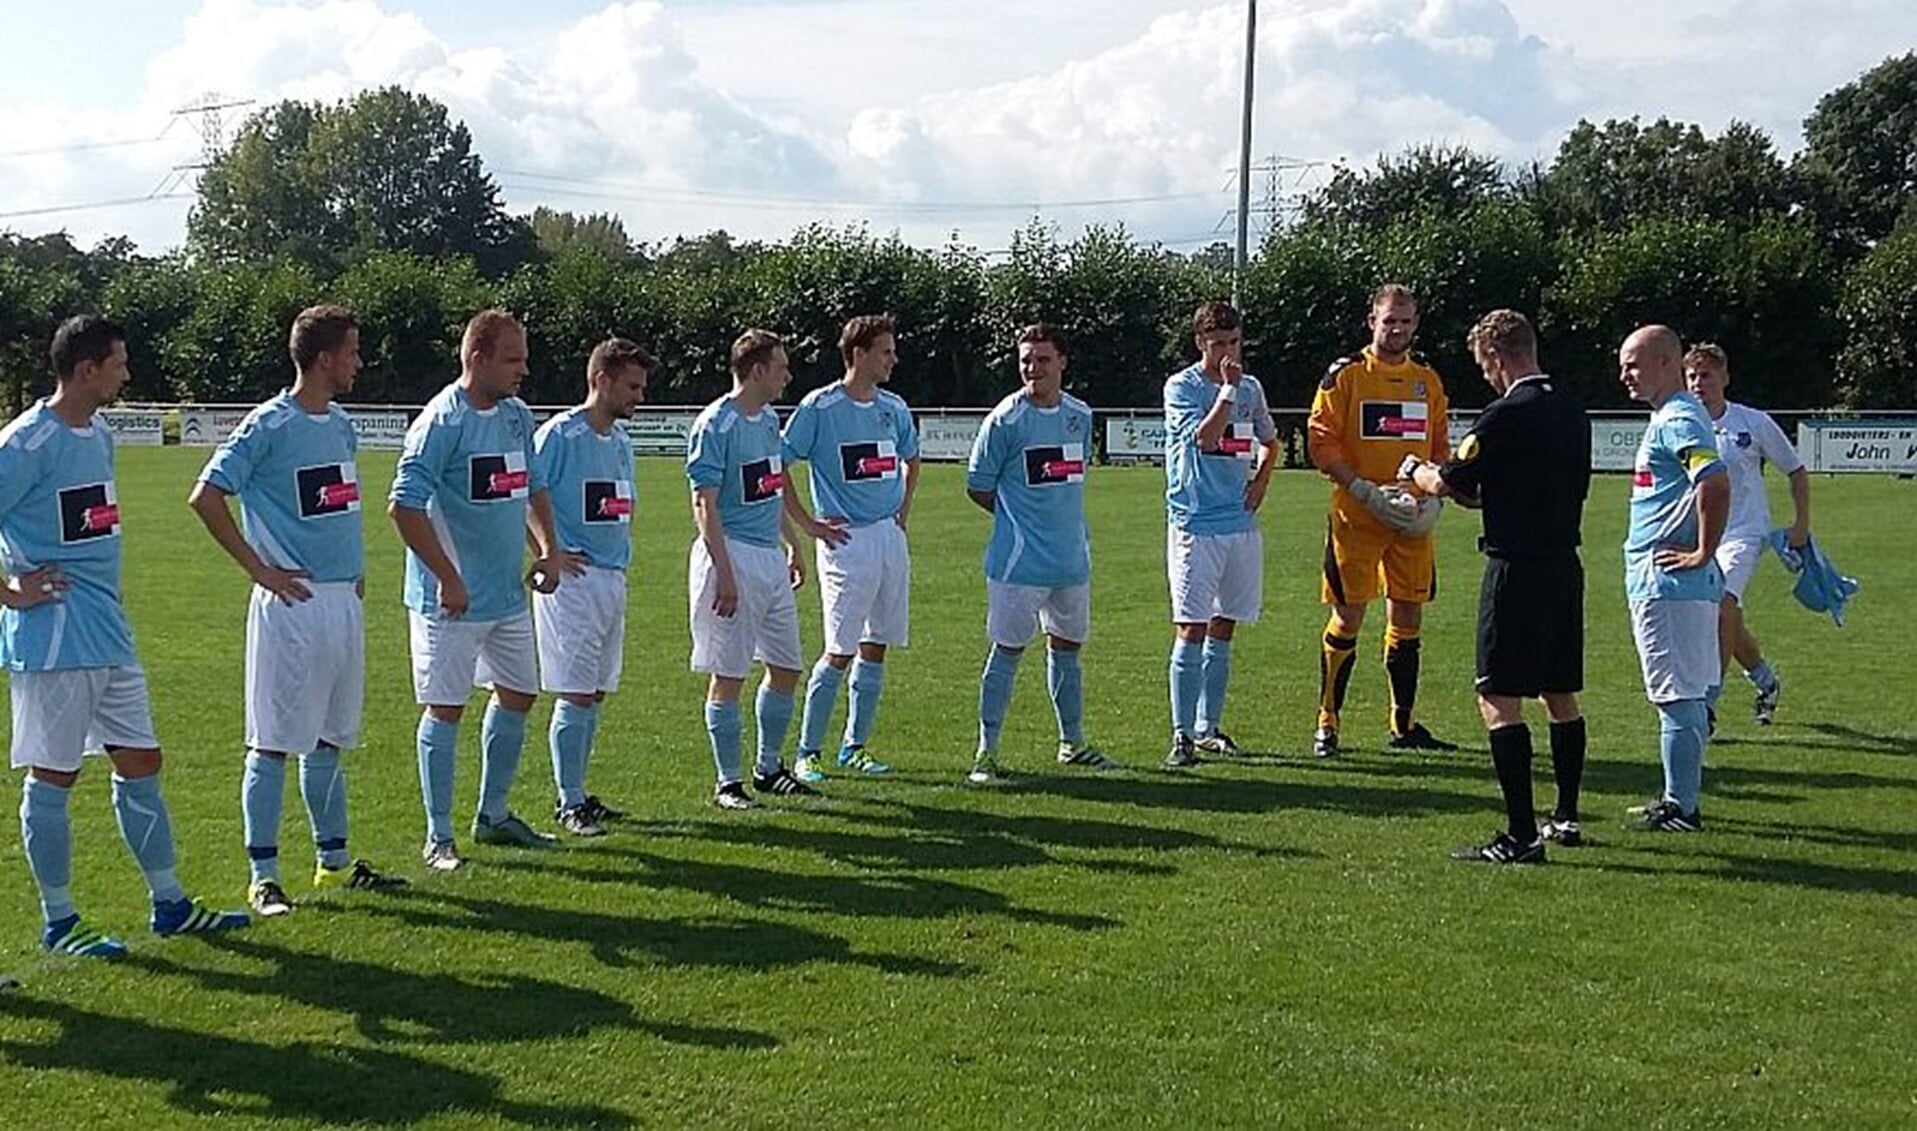 De spelerspassen van het team van Vierpolders worden gecontroleerd voor aanvang van de derby in Abbenbroek. 